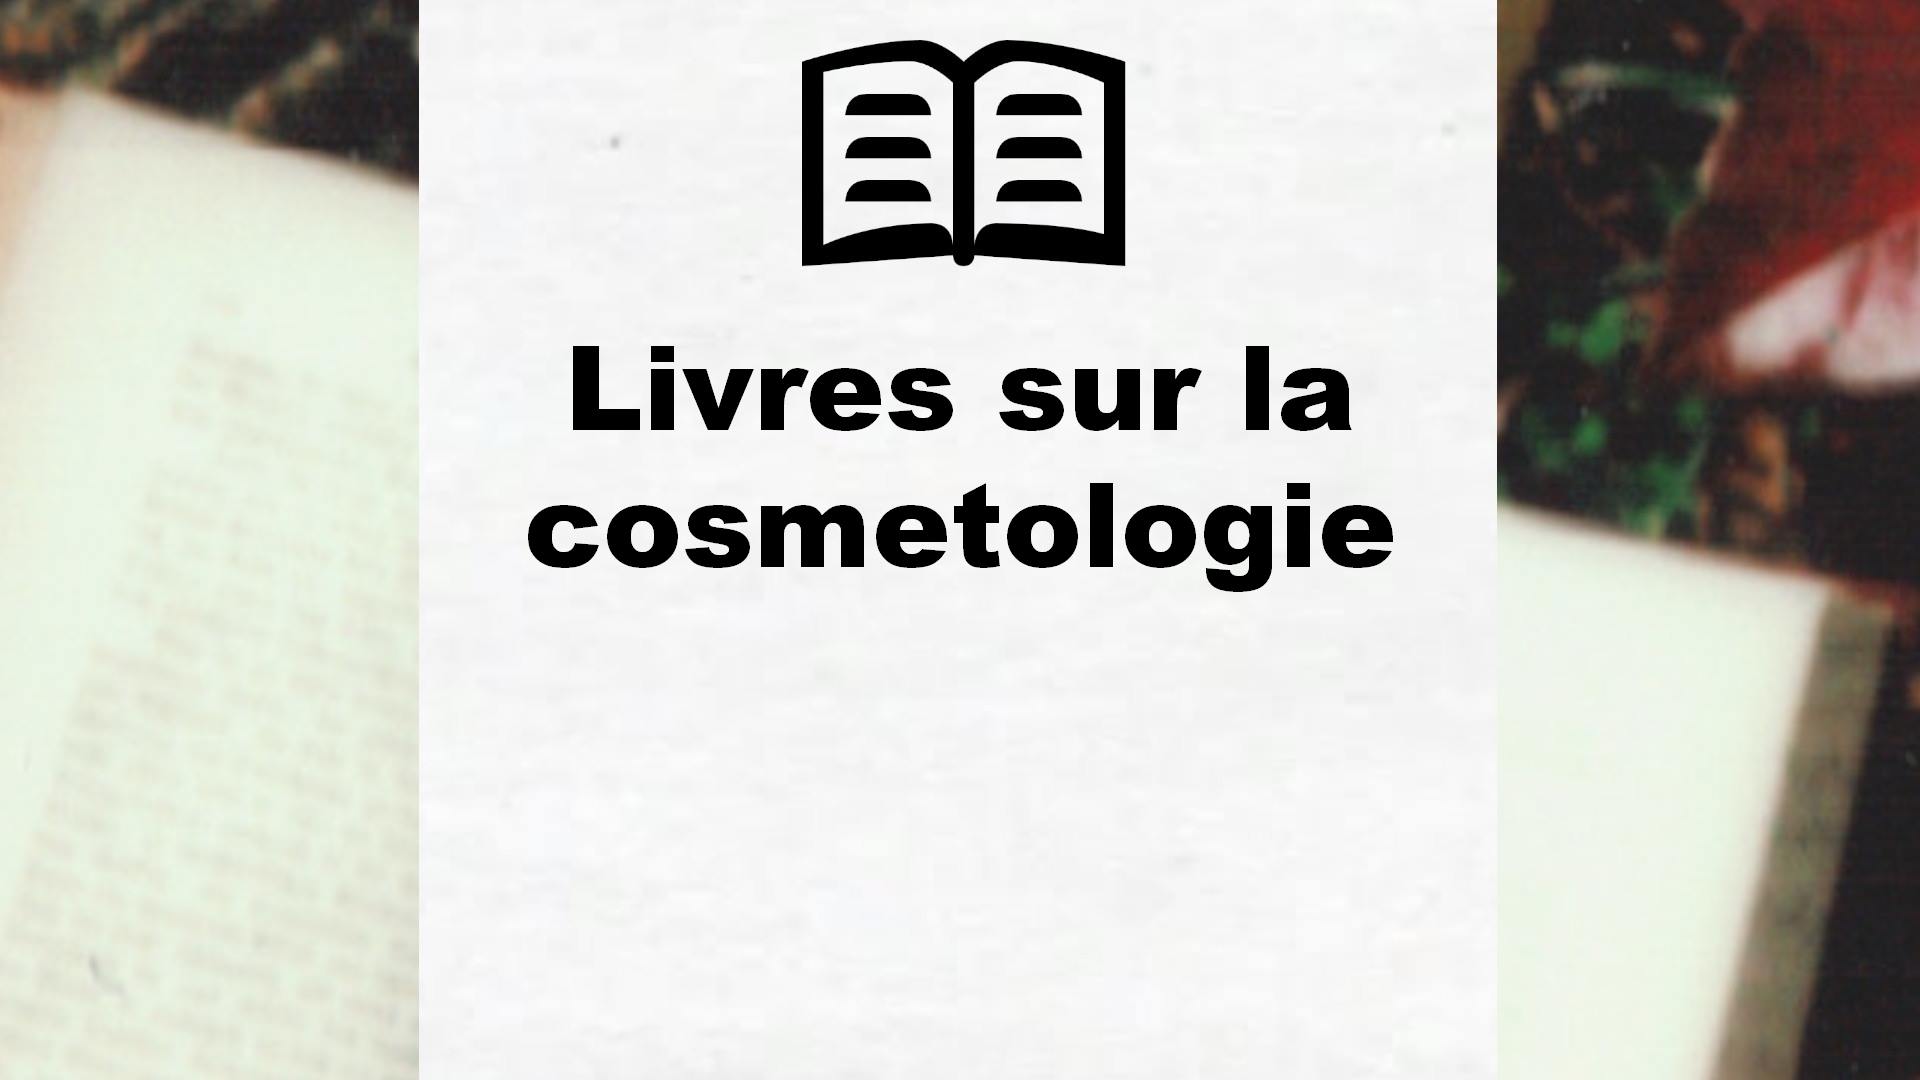 Livres sur la cosmetologie